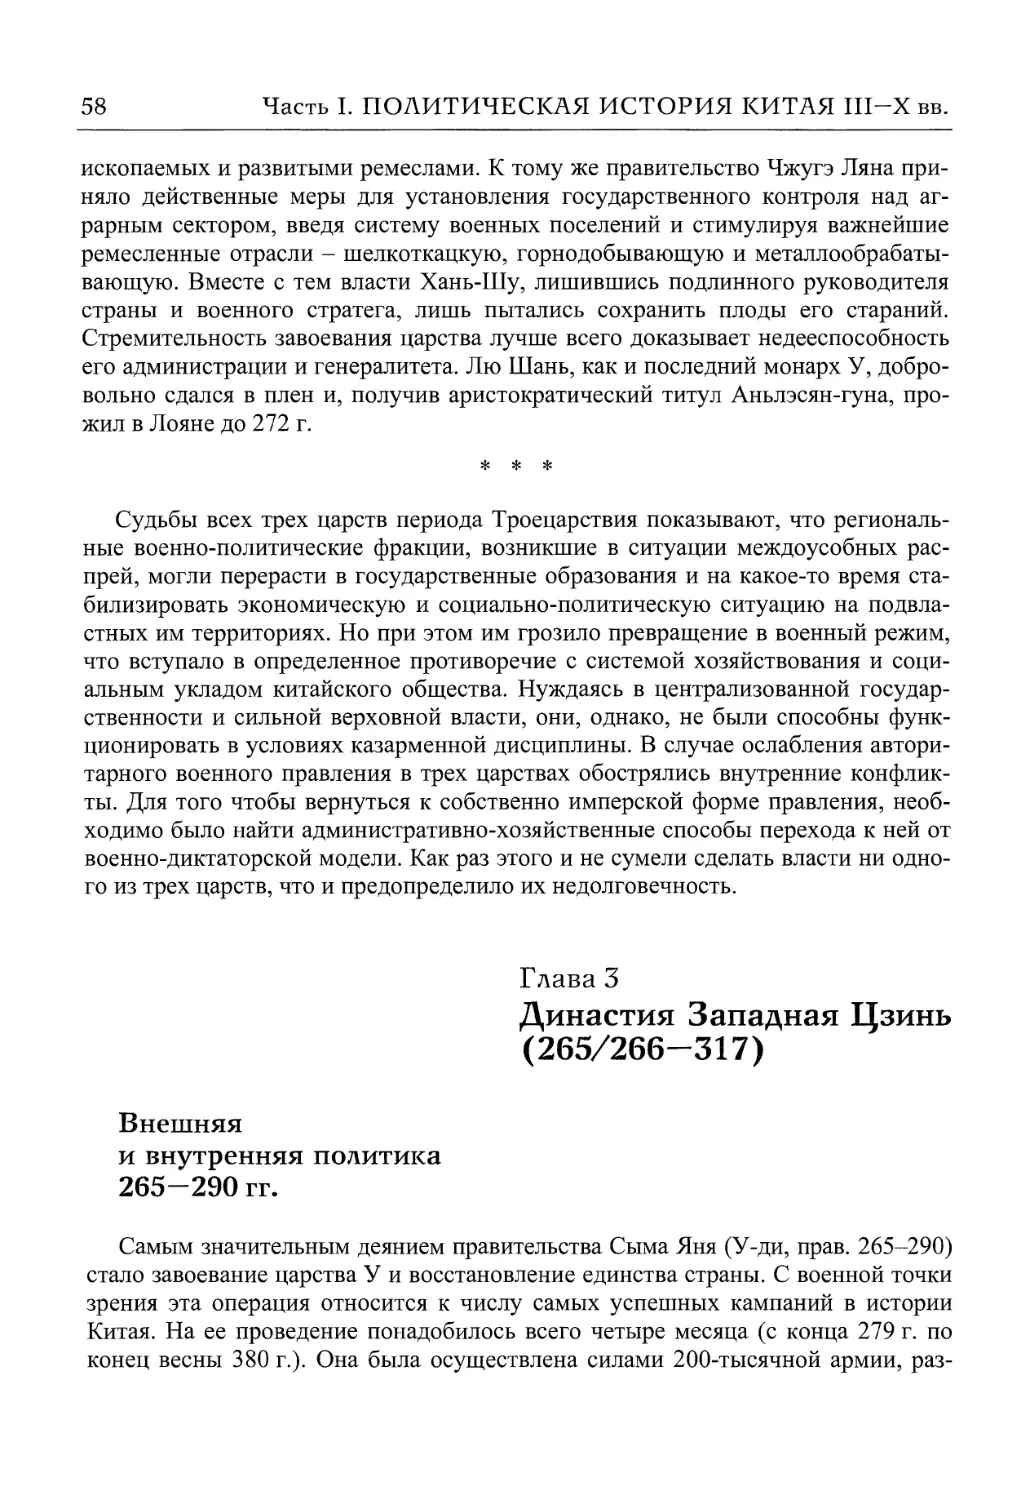 Внешняя и внутренняя политика 265-290 гг.